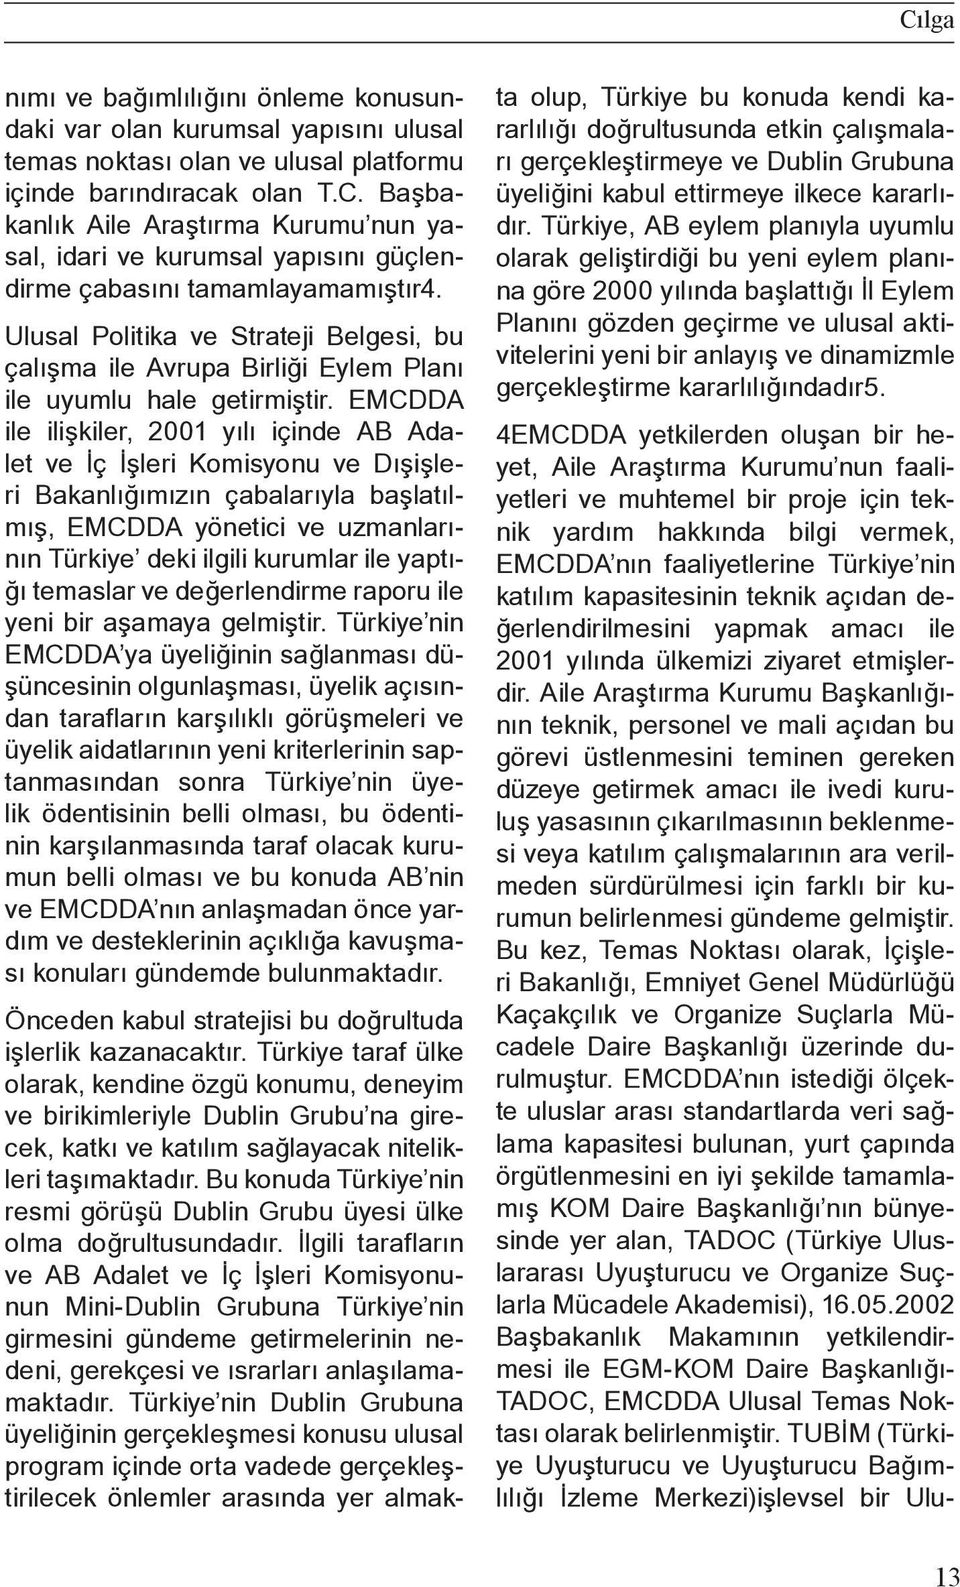 EMCDDA ile ilişkiler, 2001 yılı içinde AB Adalet ve İç İşleri Komisyonu ve Dışişleri Bakanlığımızın çabalarıyla başlatılmış, EMCDDA yönetici ve uzmanlarının Türkiye deki ilgili kurumlar ile yaptığı